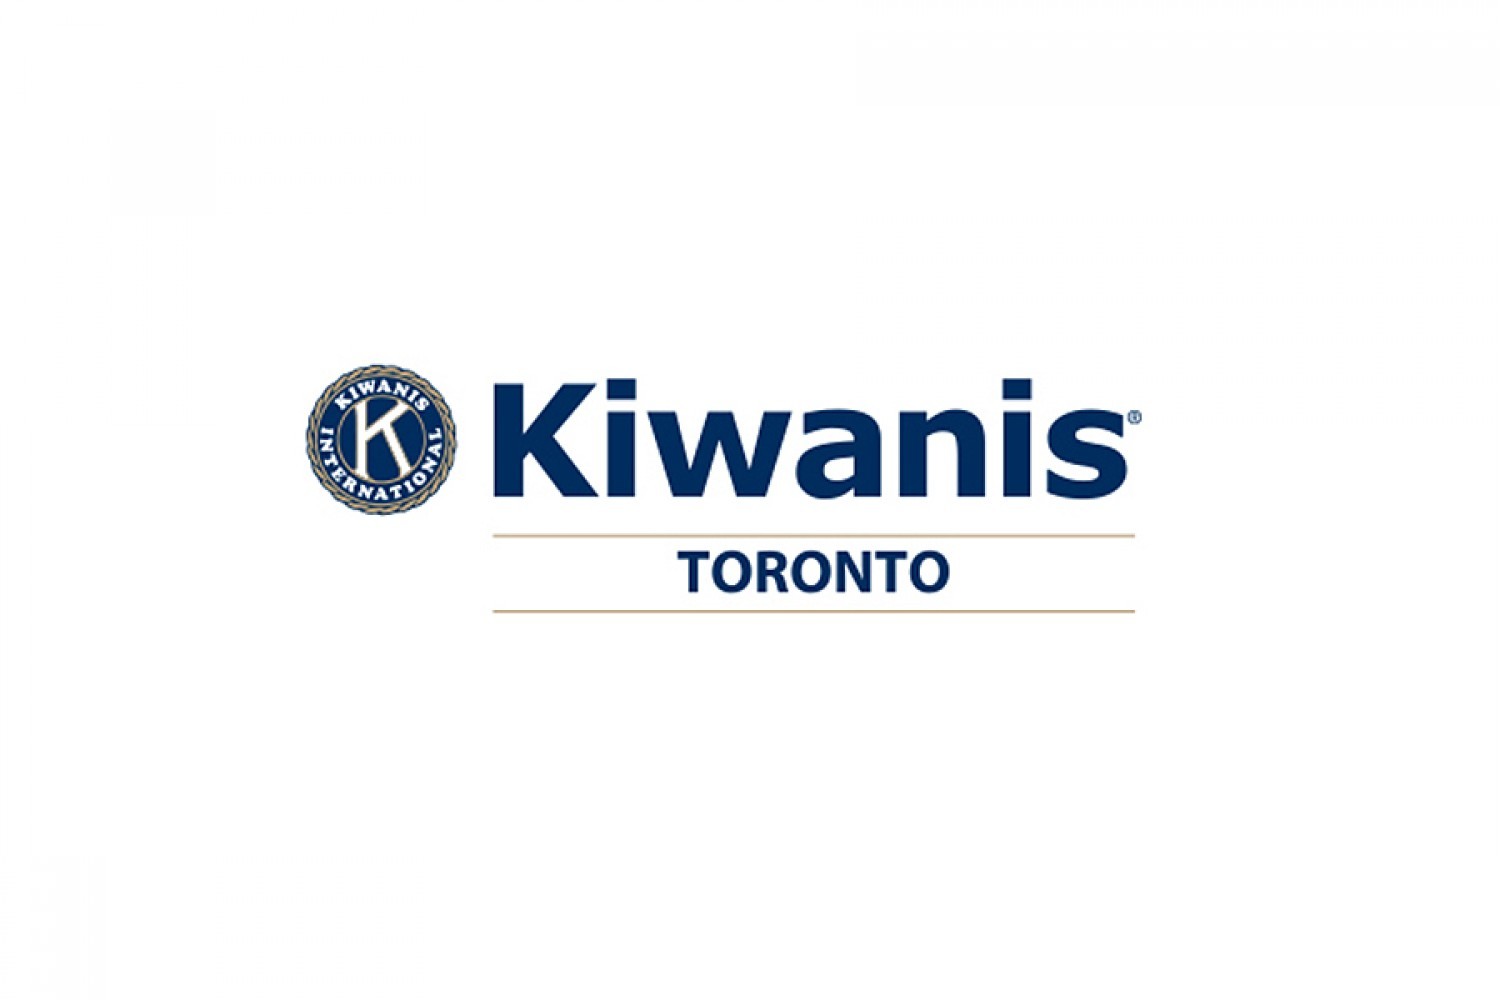 Kiwanis Toronto